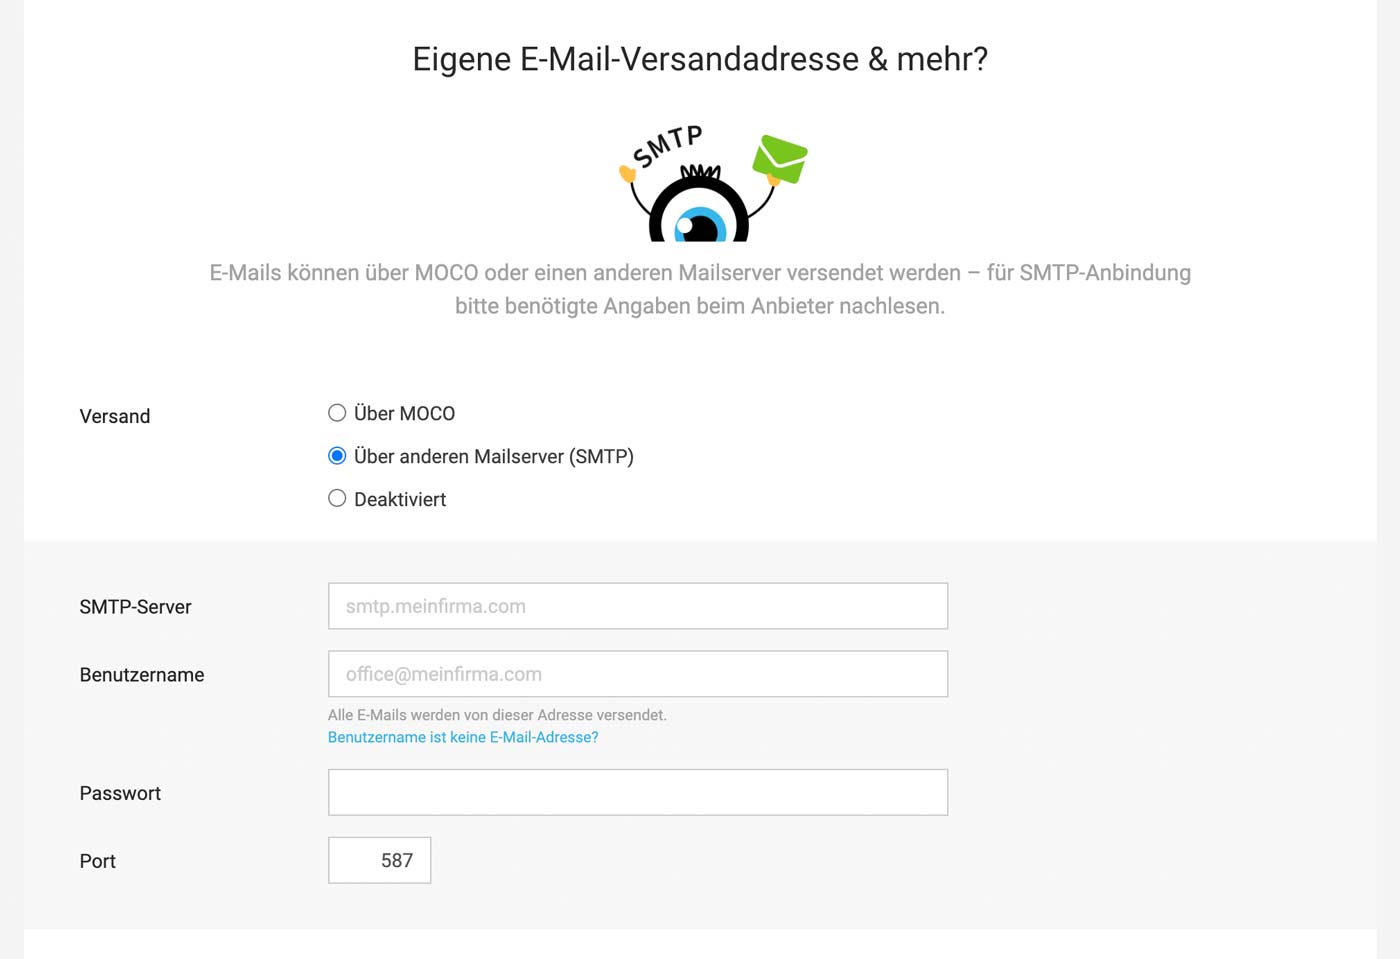 E-Mails aus MOCO über eigenen Mailserver versenden